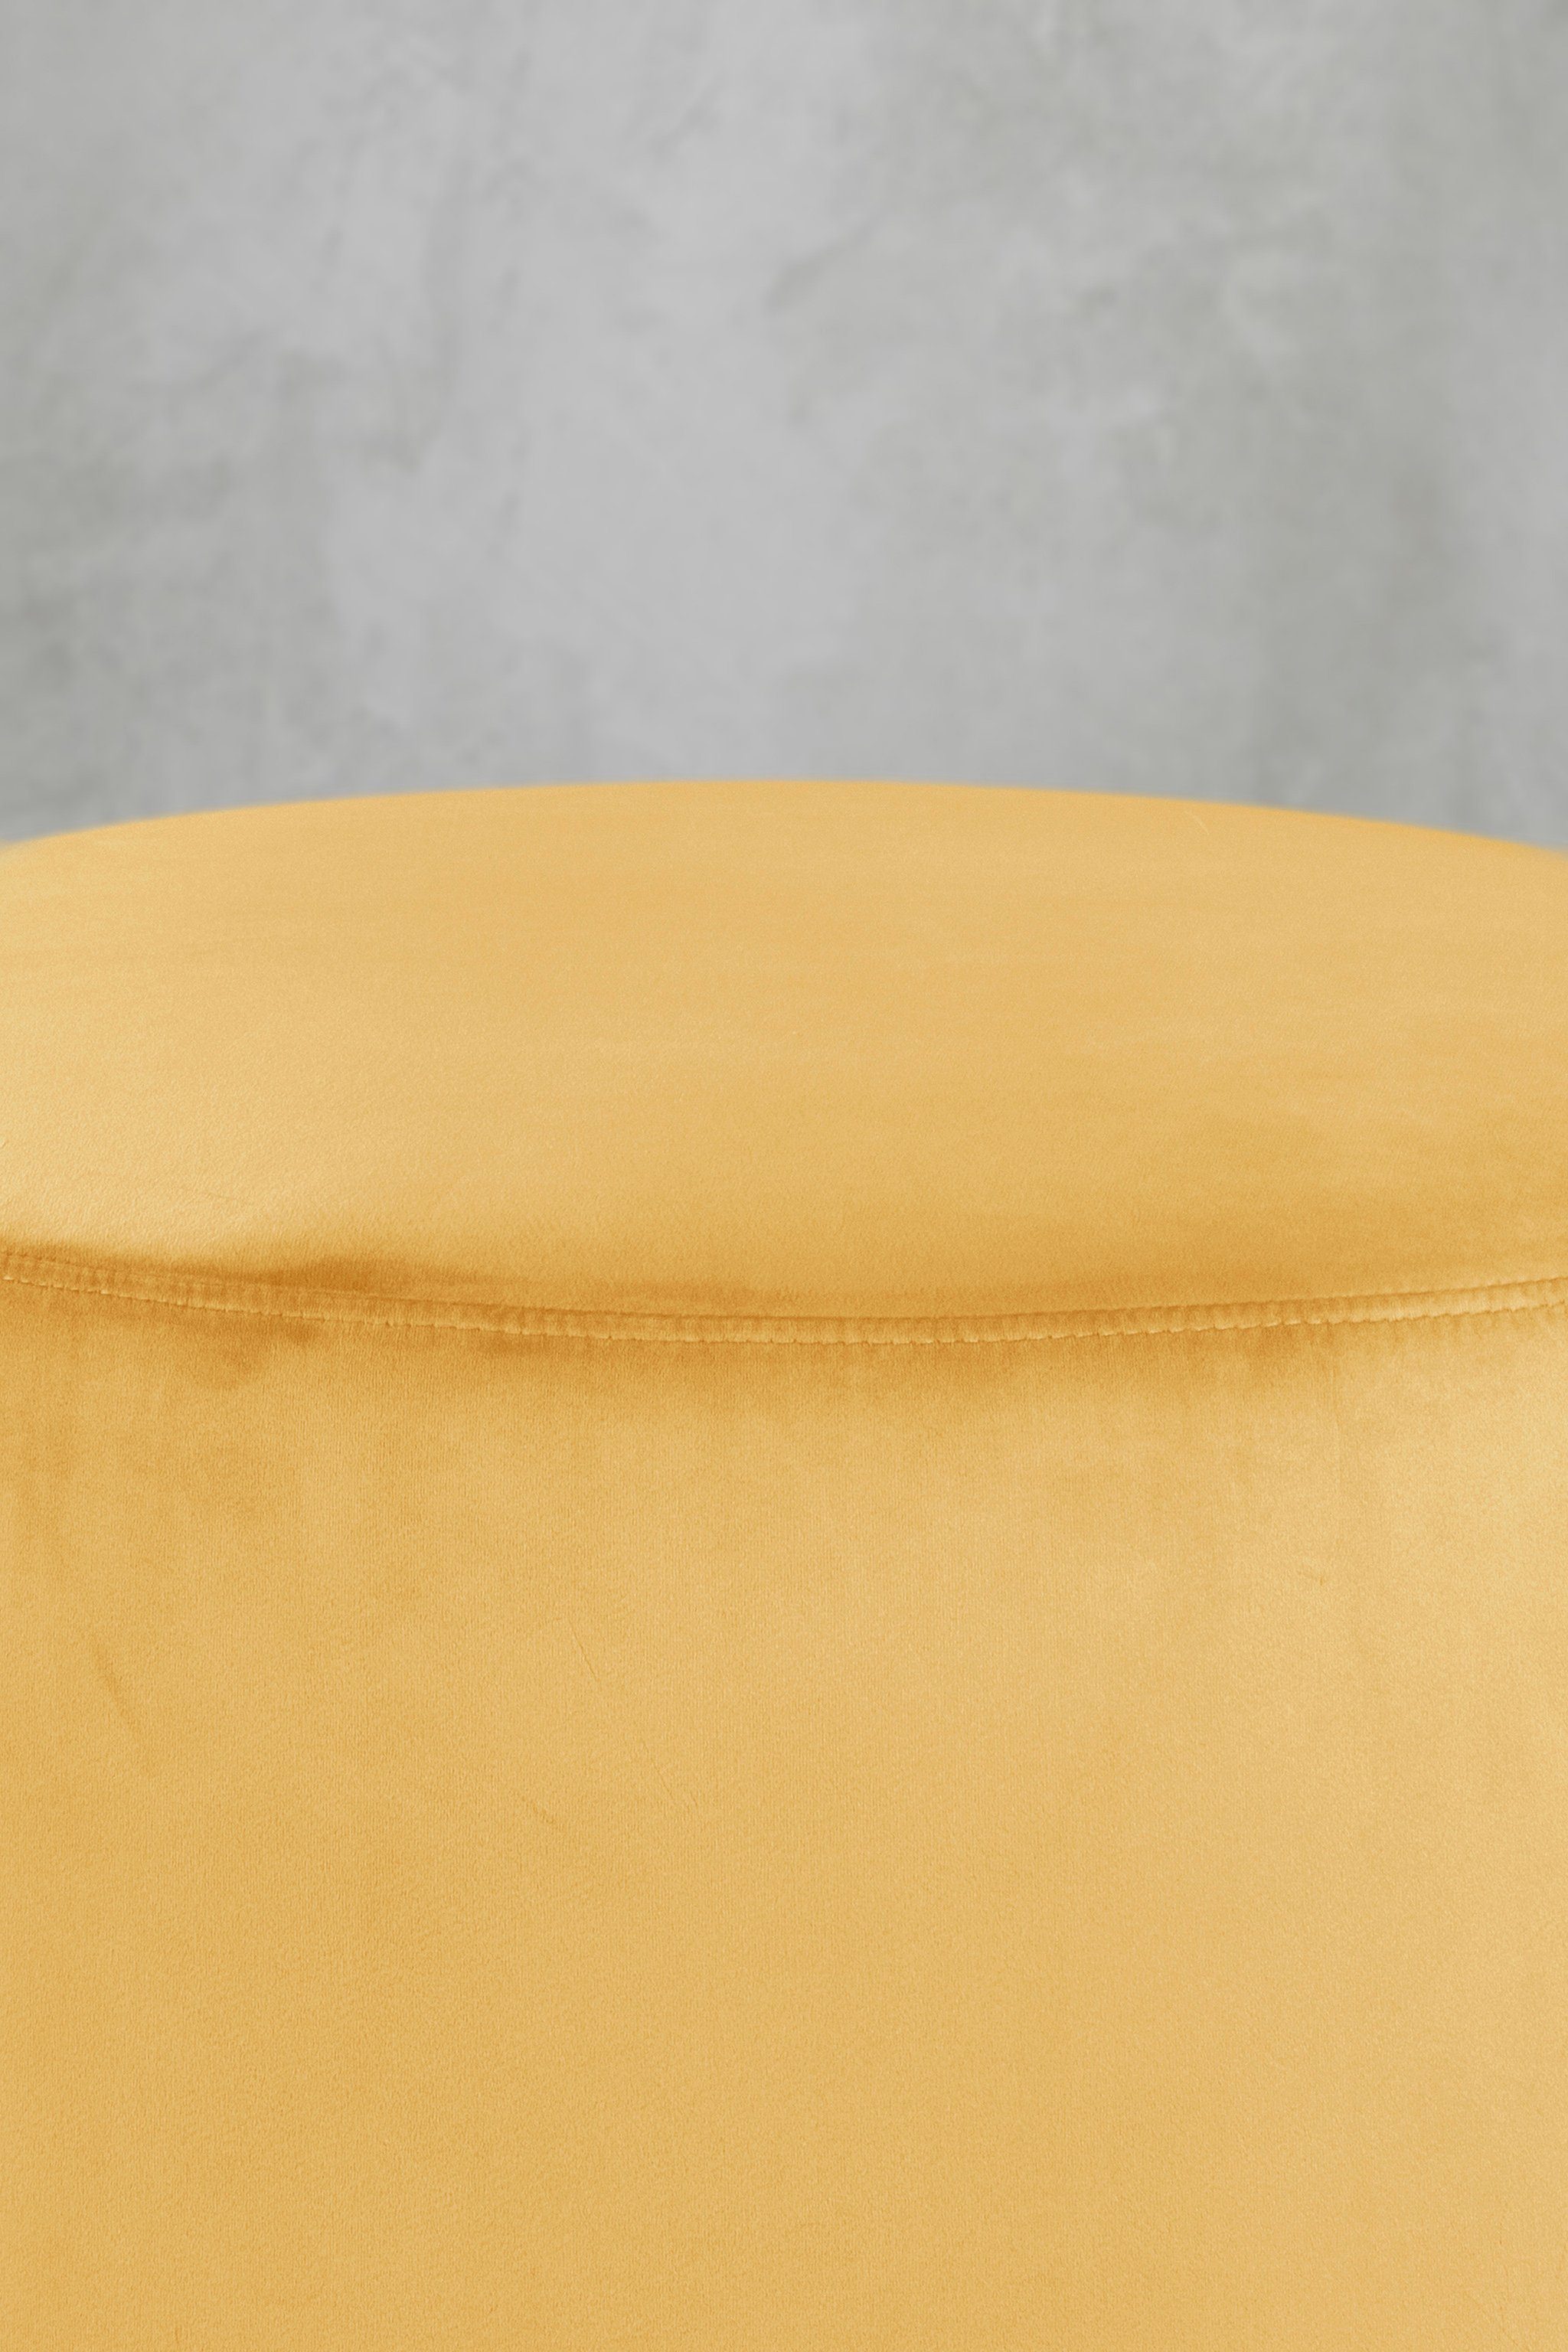 Pouf Mustard Yellow Sitzhocker schmuseweichem Gelb Samtbezug mit carla&marge (47x55x55 in cm), Epomella